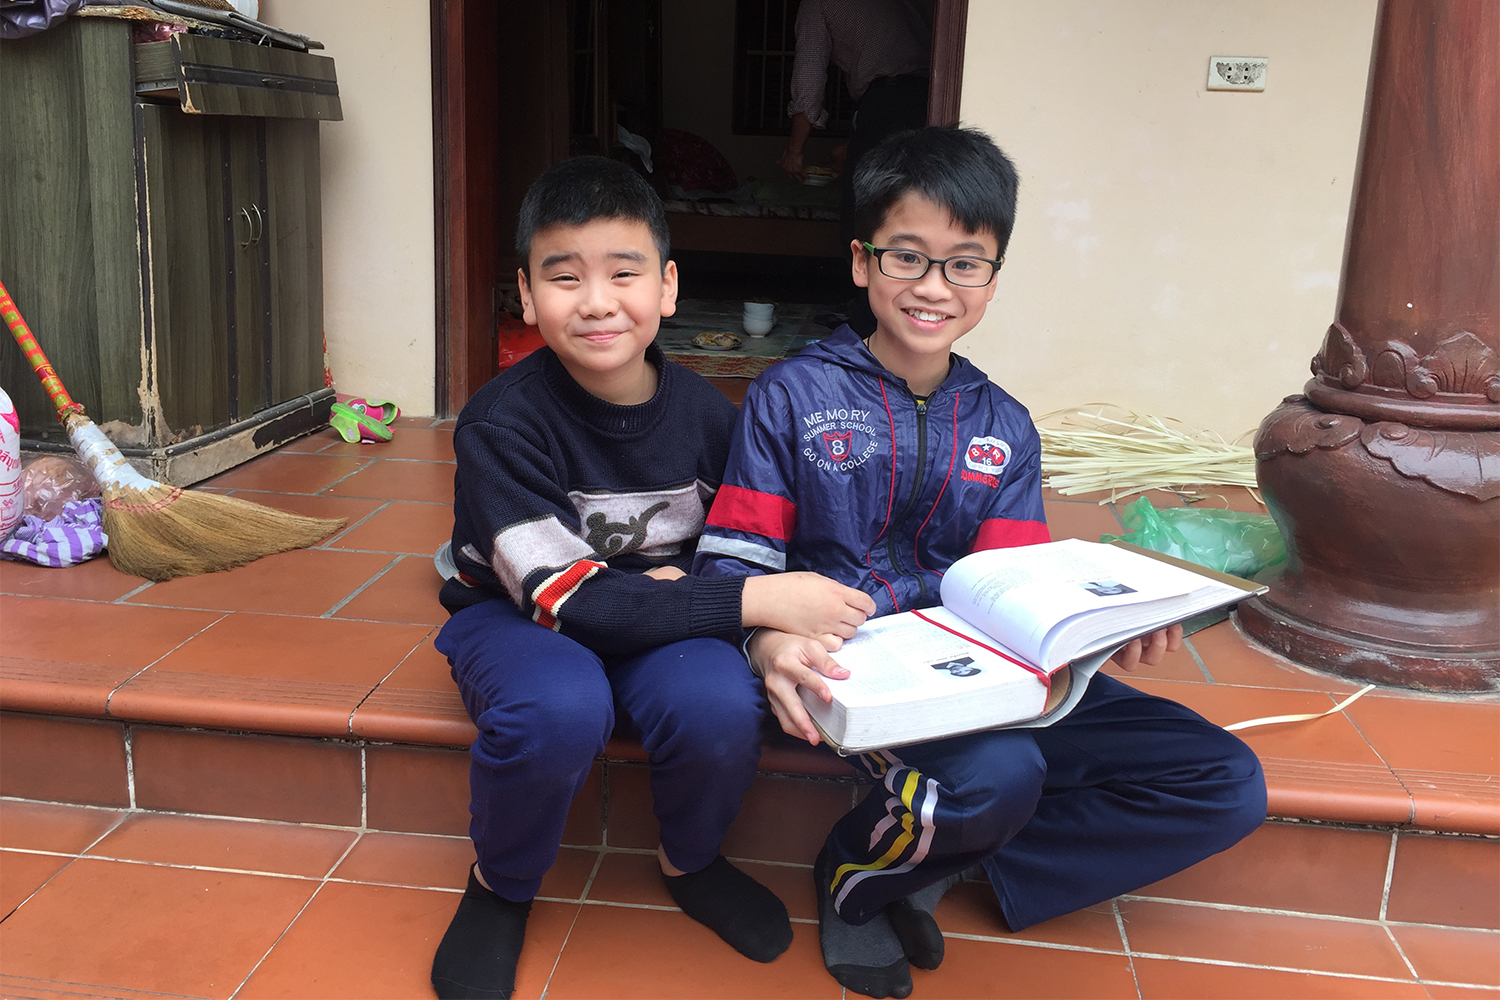 Dang (à droite) et son cousin Viet – surnommé Pamplemousse, le fils de Diep. Les enfants consultent un livre qui rassemble tous les noms des doctorants au Vietnam. Leur grand-oncle, qui a réalisé une thèse en doctorat en russe, y figure.